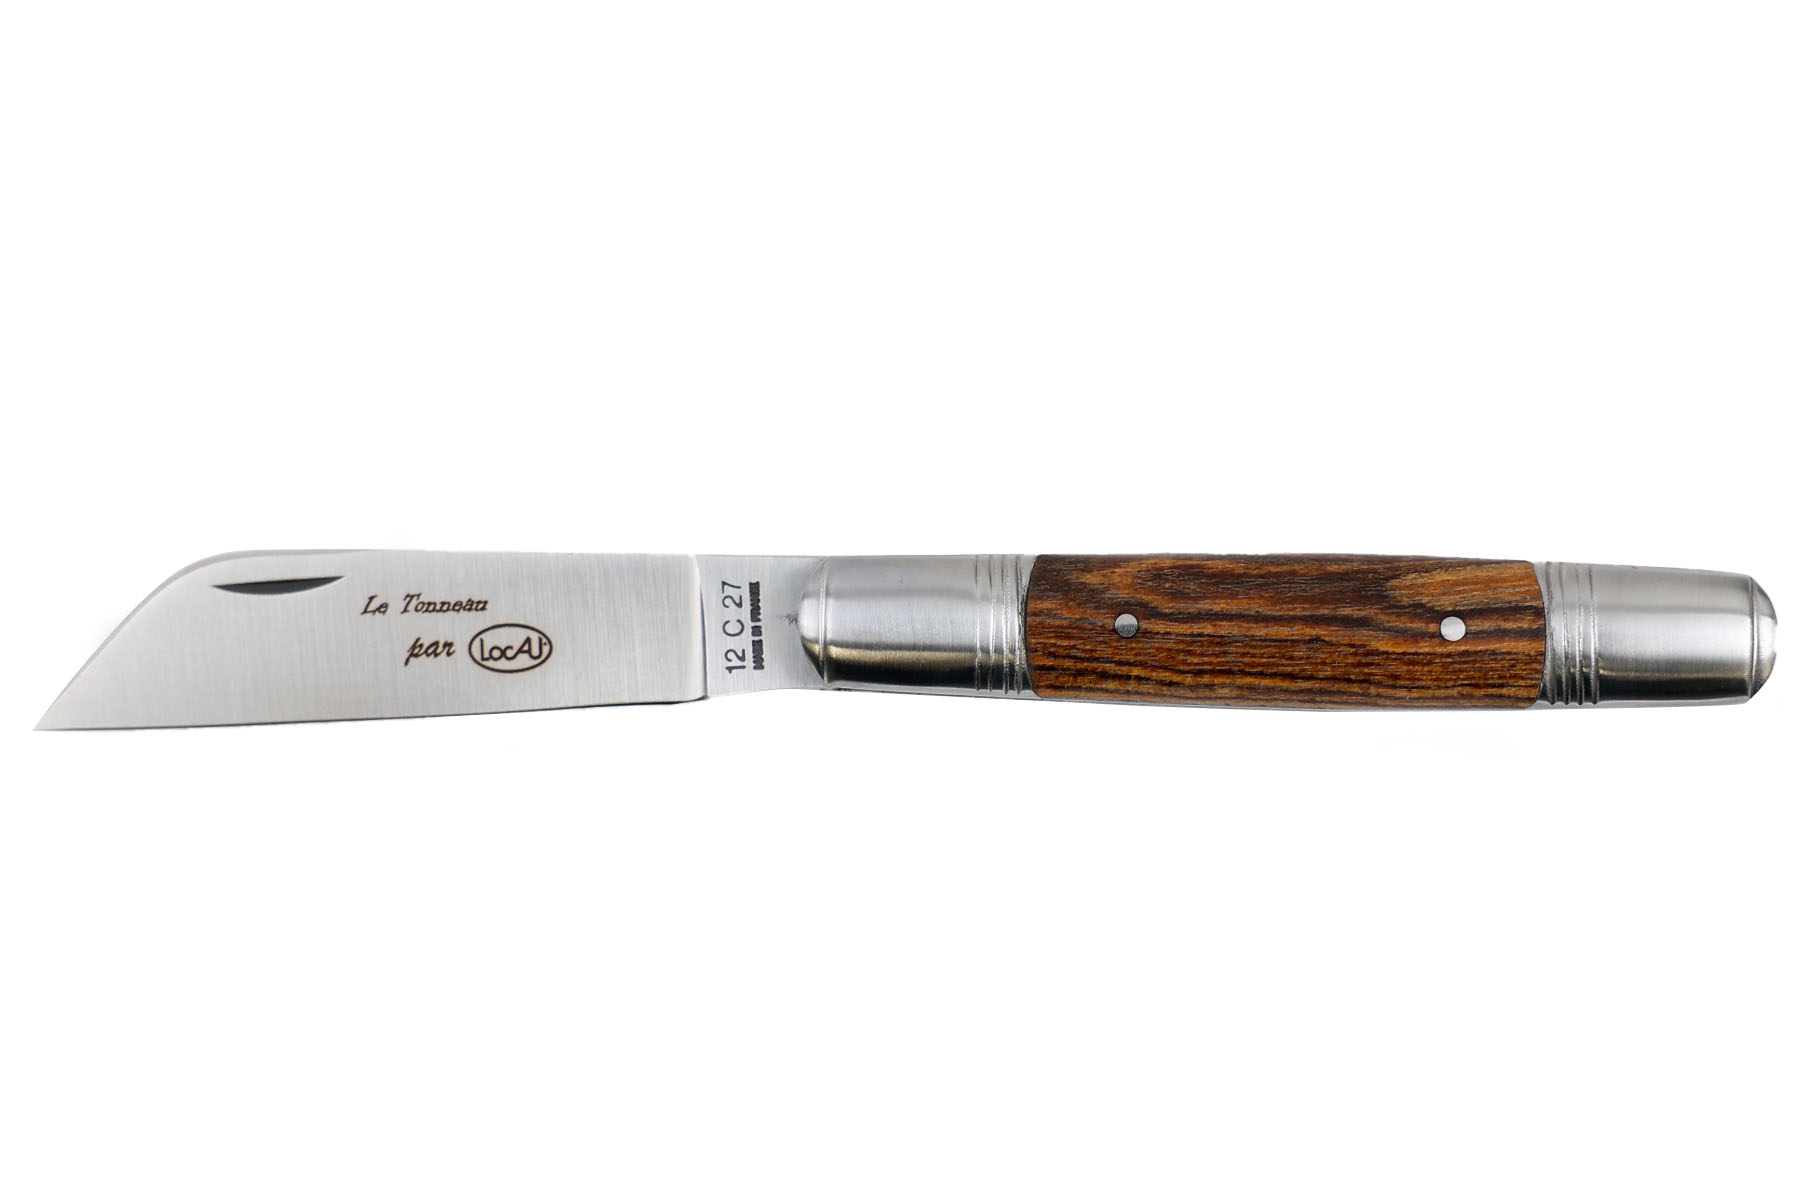 Couteau pliant modèle "Le Tonneau" par Locau - Bocote